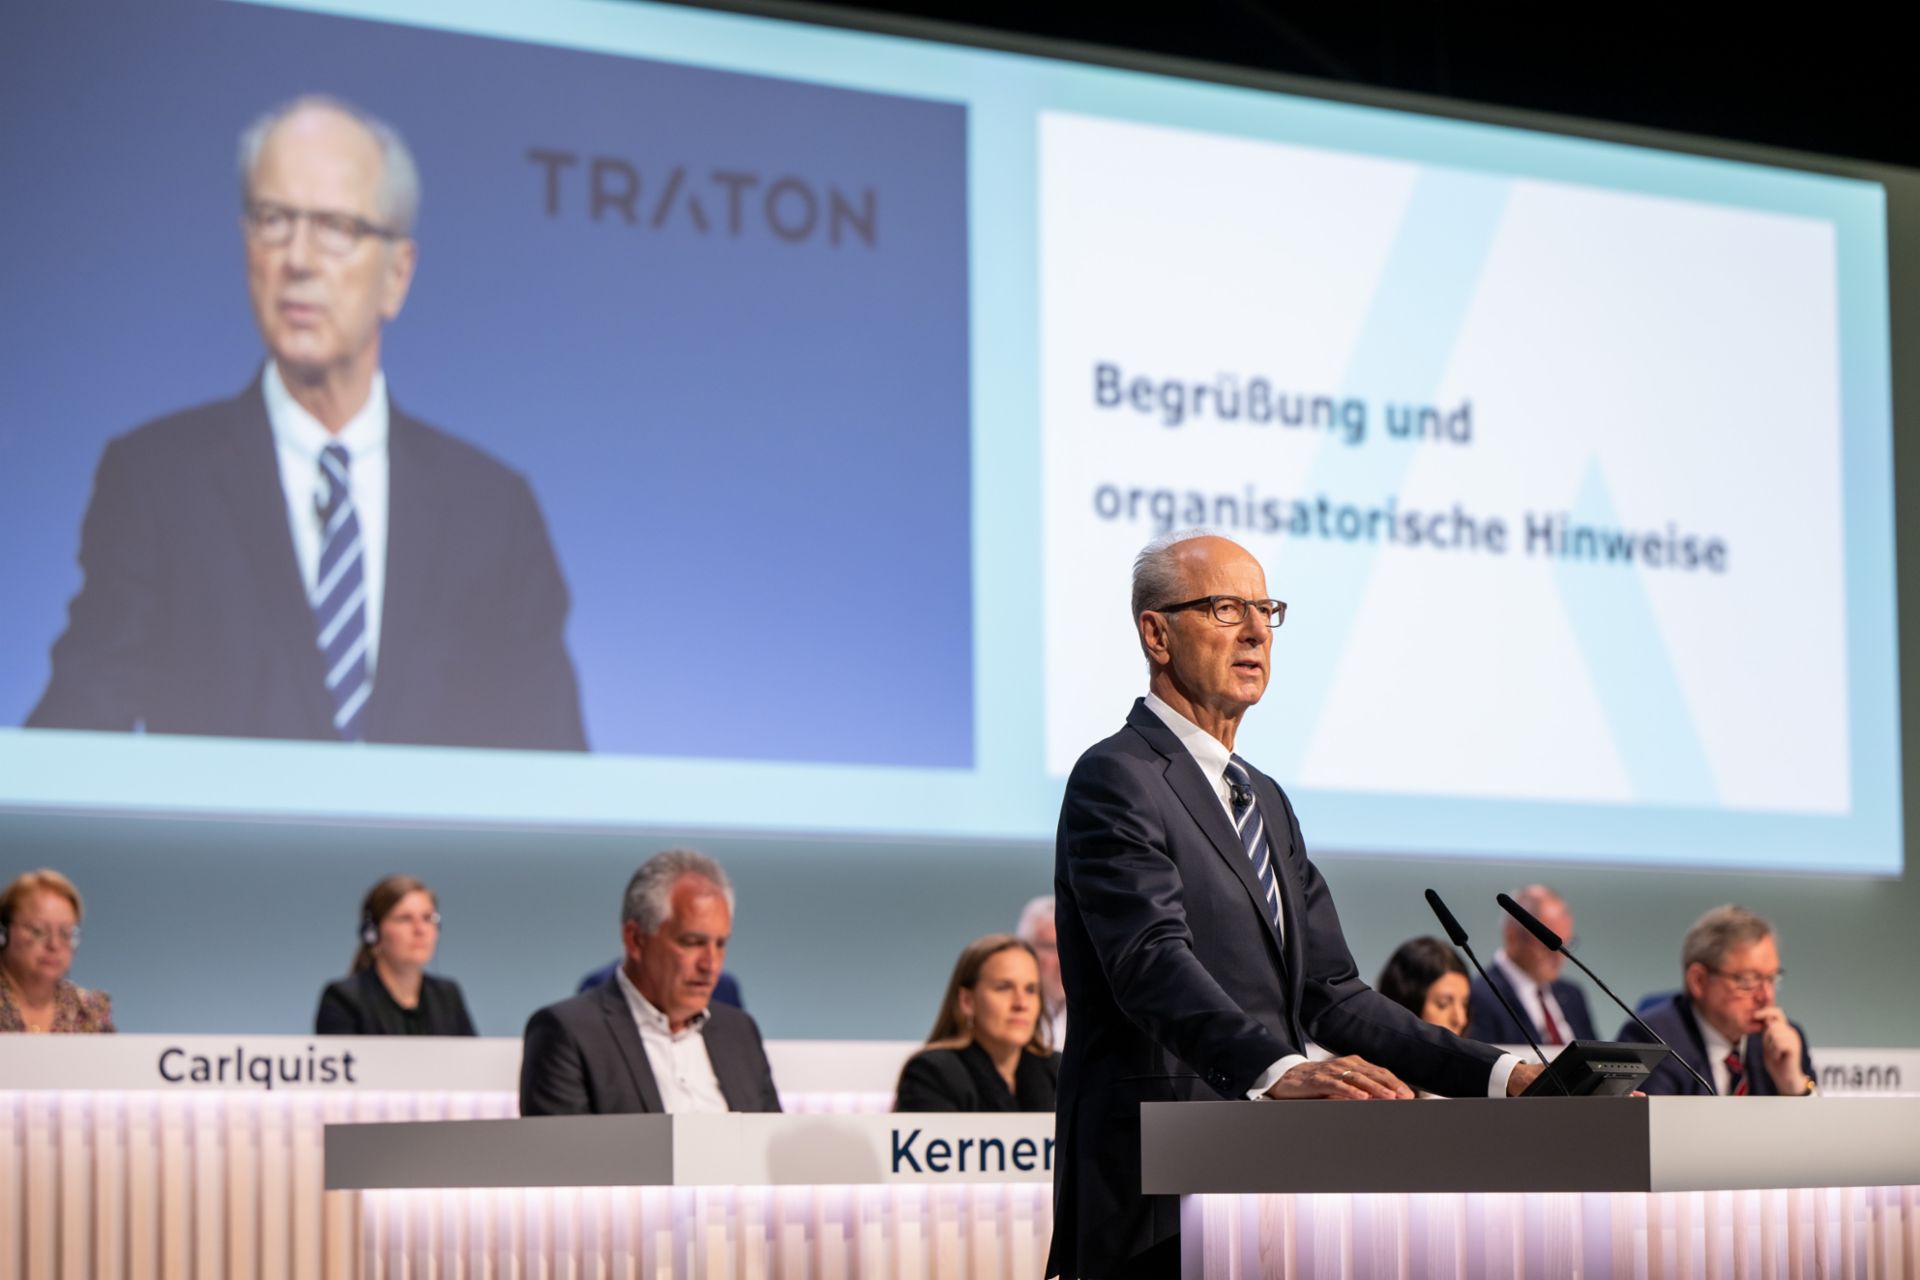 Begrüßung und organisatorische Hinweise zur TRATON Hauptversammlung 2023 durch Hans Dieter Pötsch.
                 